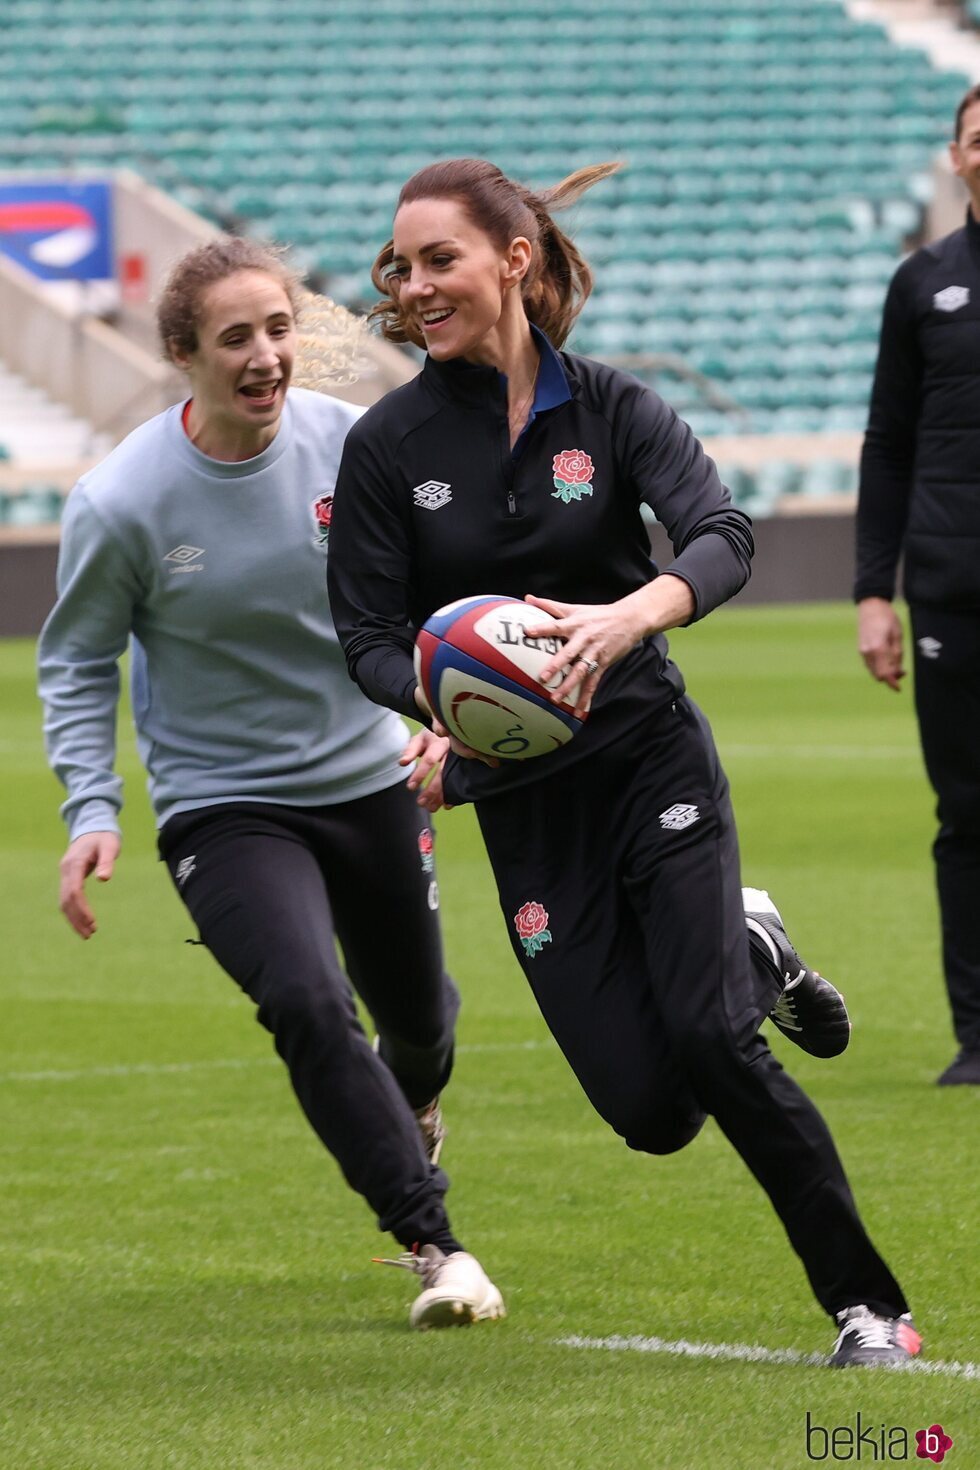 Kate Middleton jugando un partido de rugby